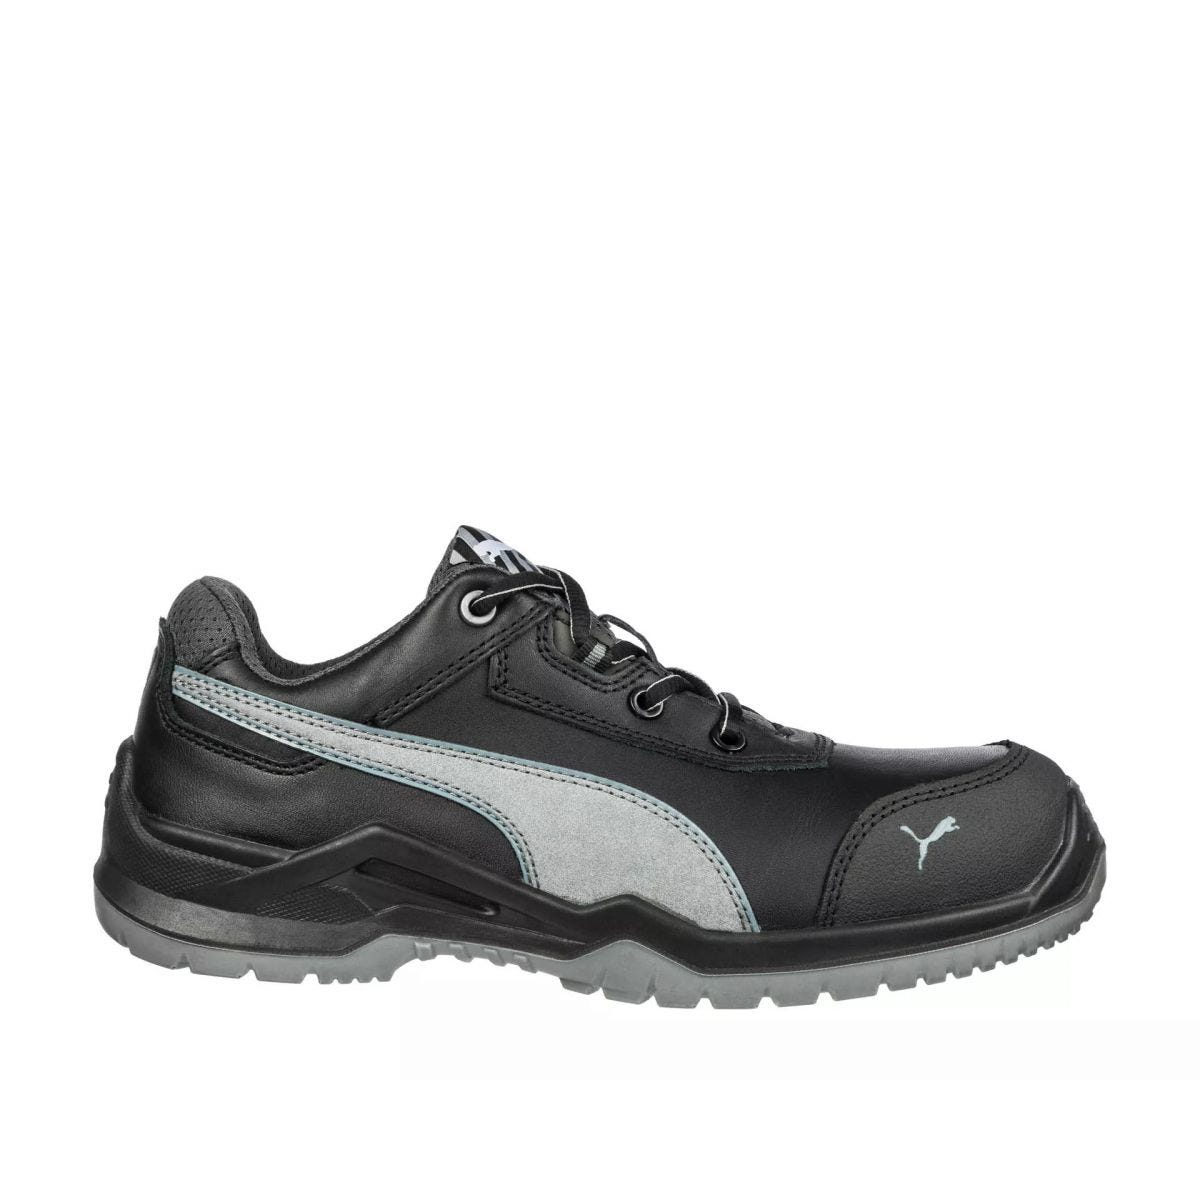 Chaussures de sécurité Argon RX low S3 ESD SRC noir - Puma - Taille 44 0